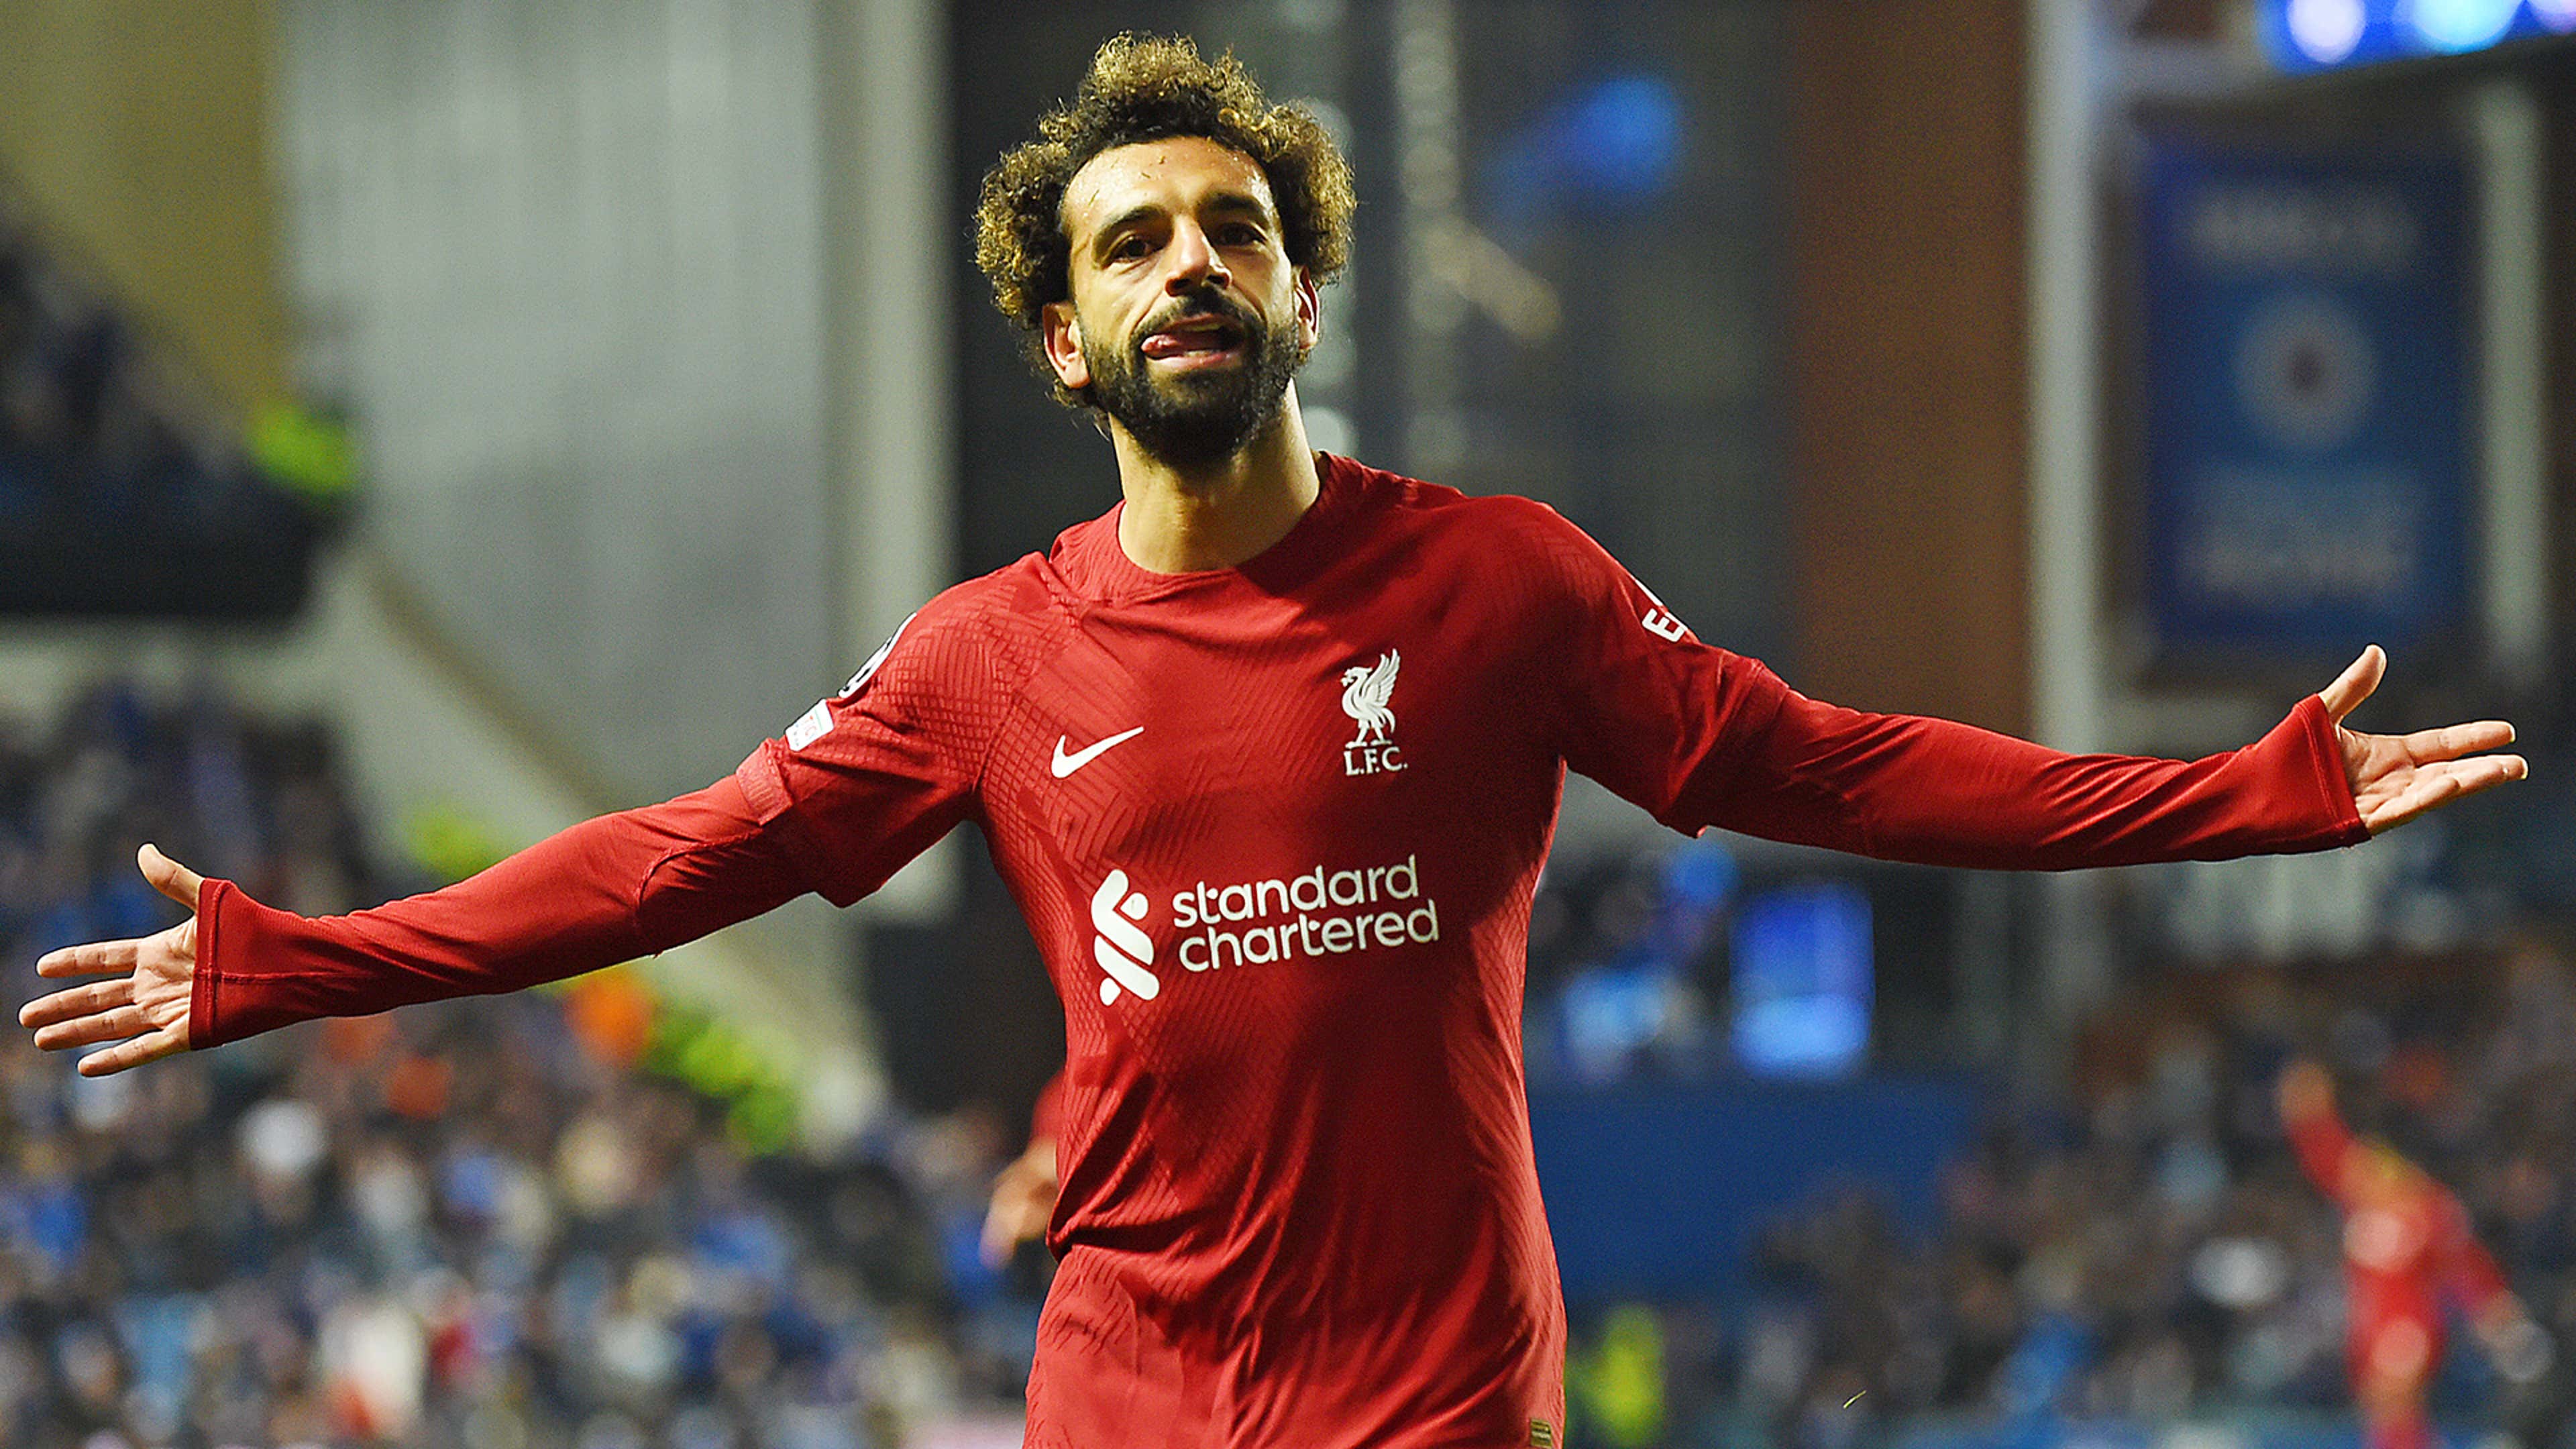 Liverpool SUPERSTAR Mohamed Salah.